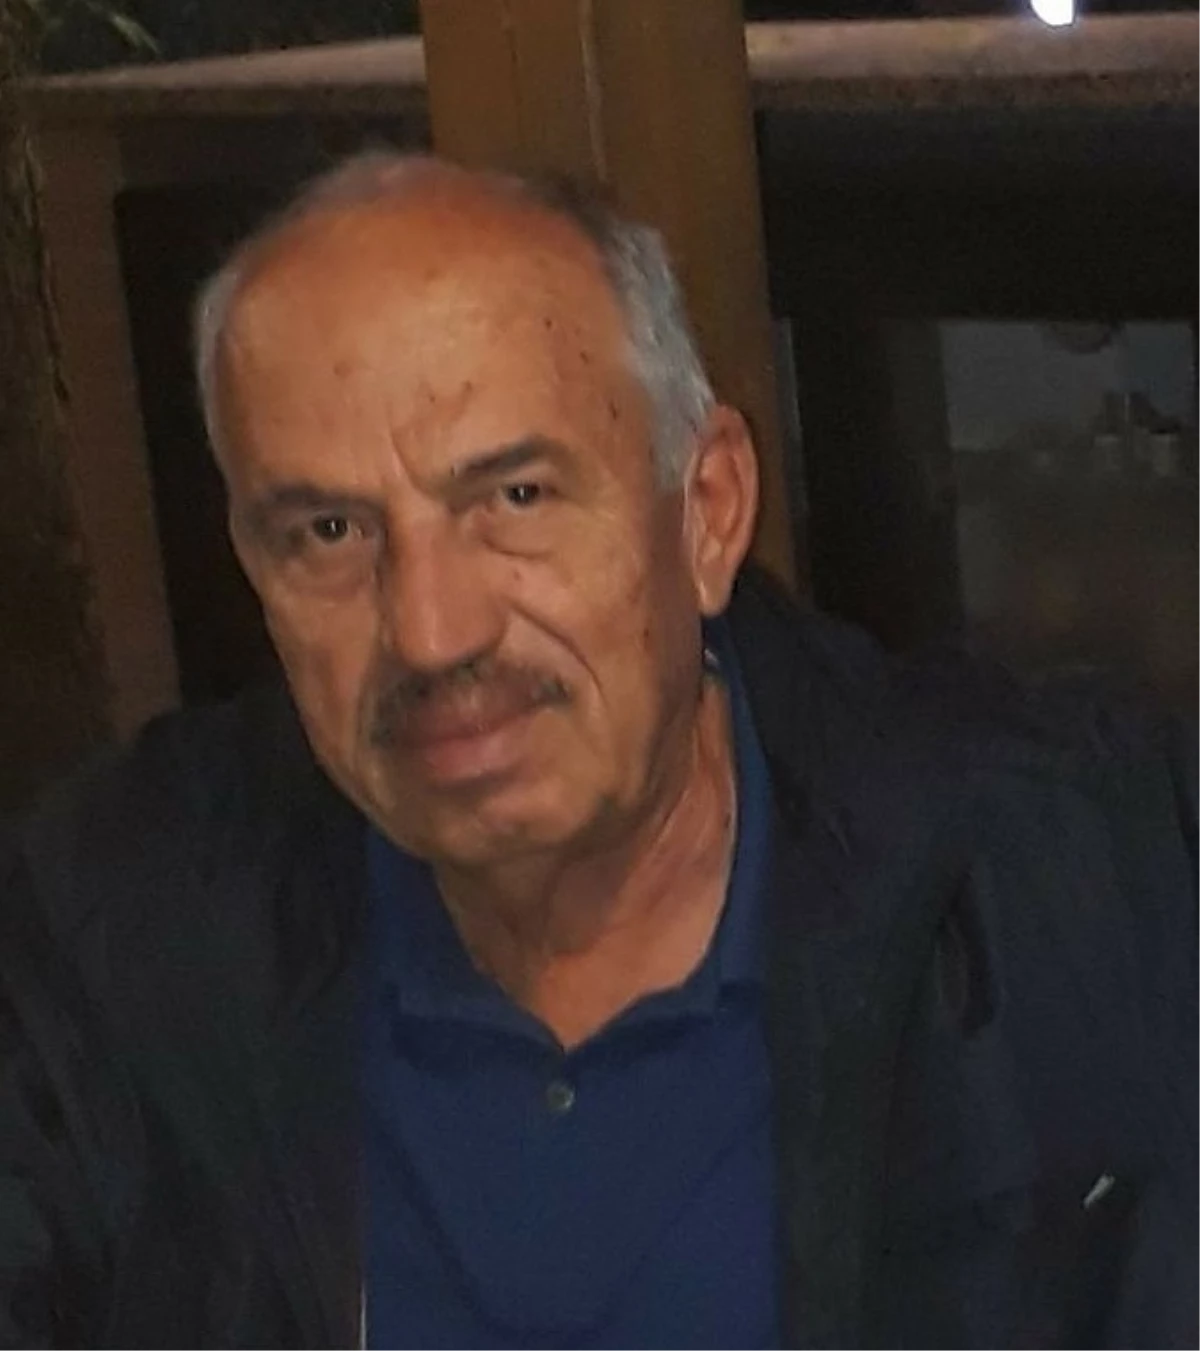 Sinema sanatçısı Ahmet Canbazoğlu\'nun ağabeyi, evinde dövülerek öldürüldü